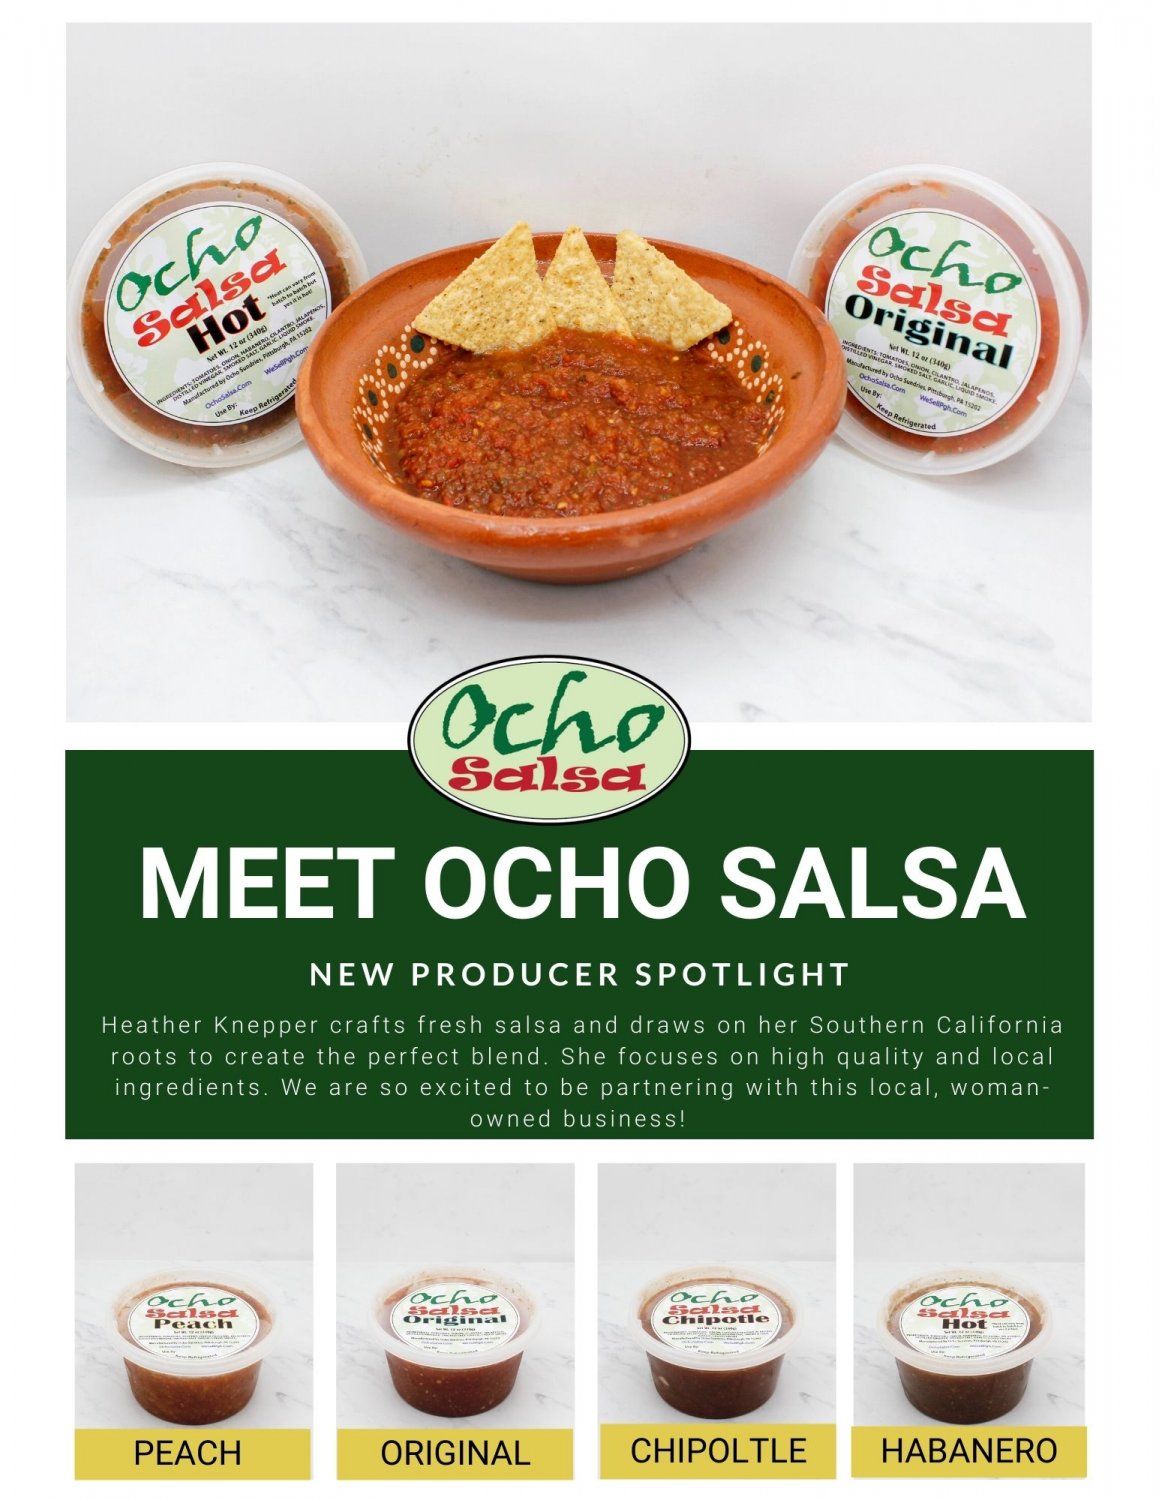 Meet Ocho Salsa!